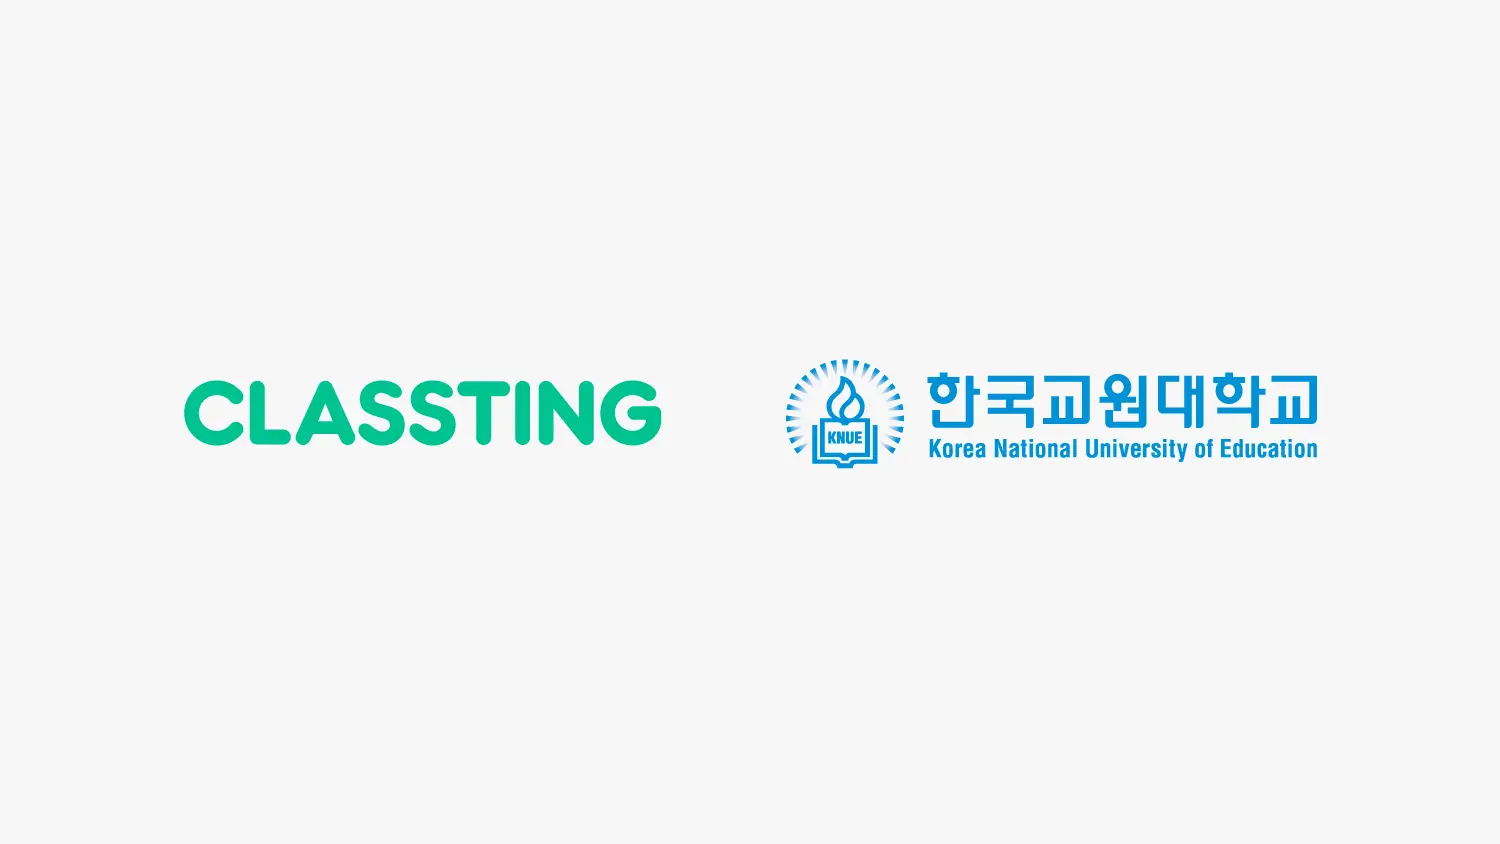 [보도자료] 클래스팅, 한국교원대와 AI・디지털 역량 갖춘 교원 양성 위한 MOU 체결